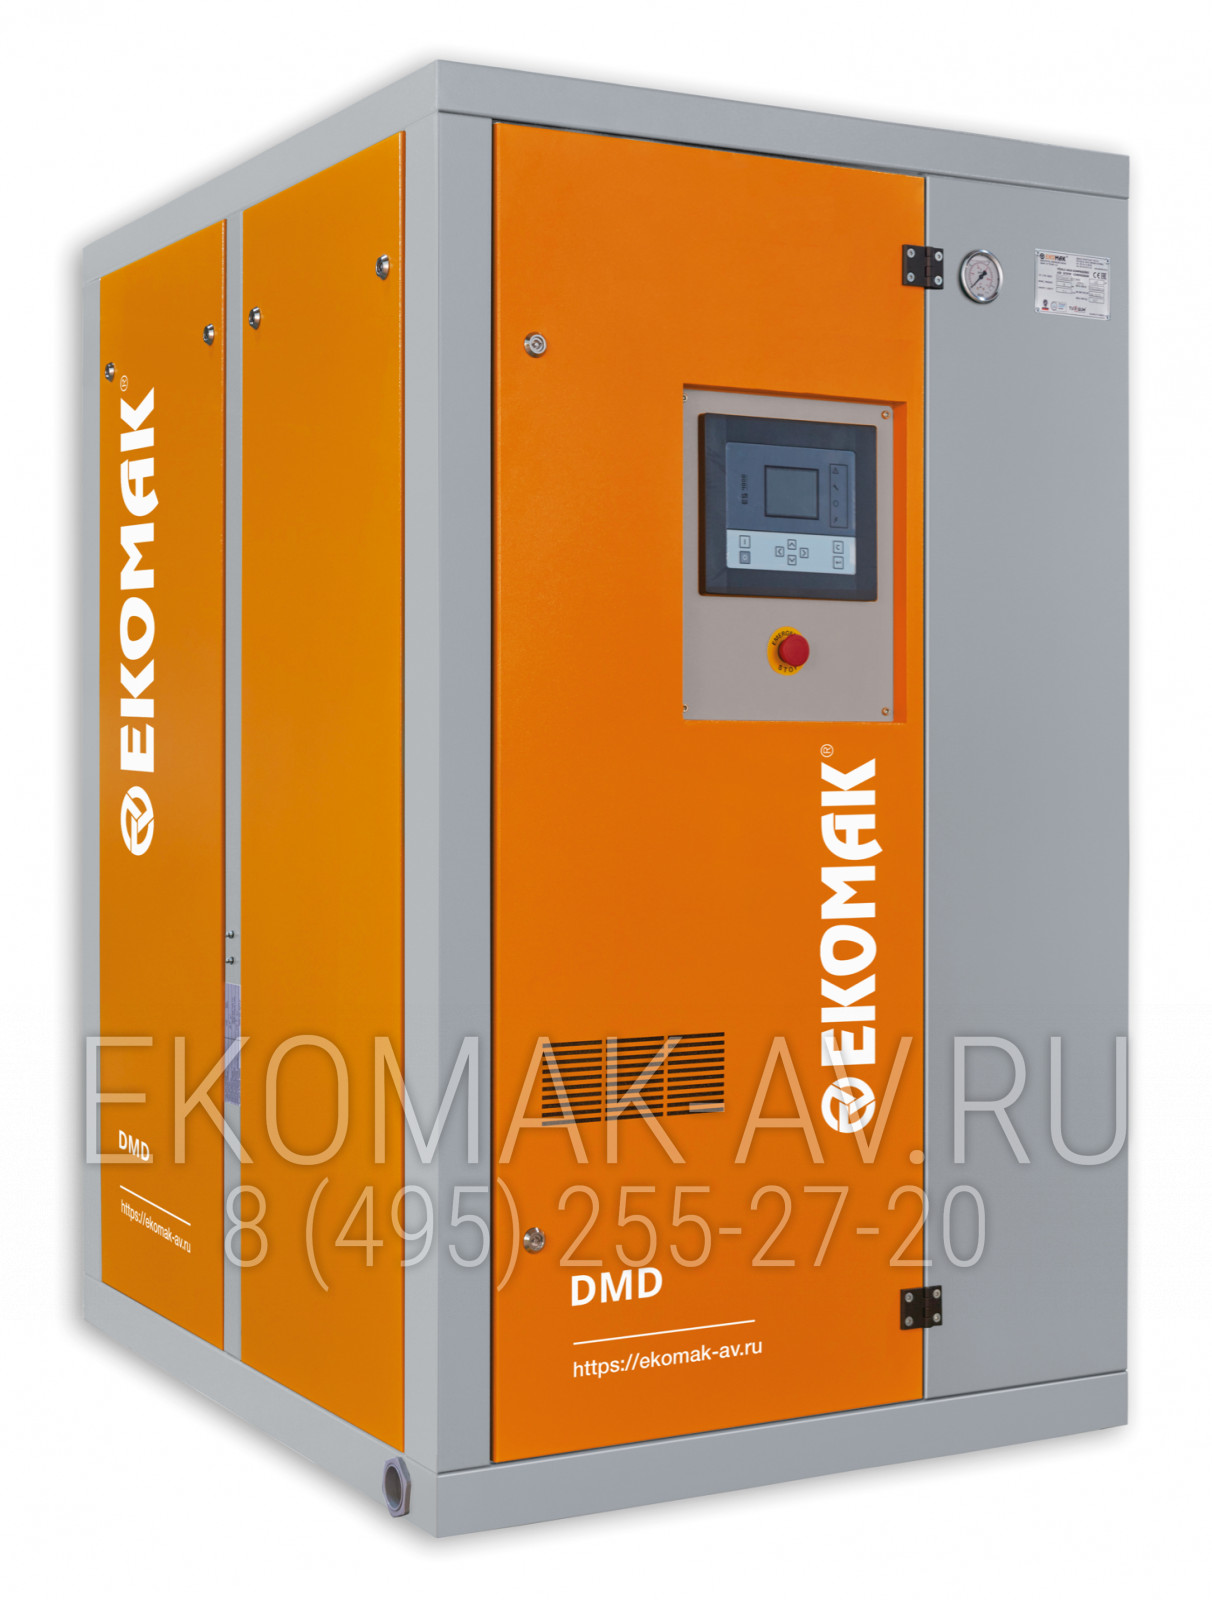 Винтовой компрессор Ekomak DMD 600C VST 8